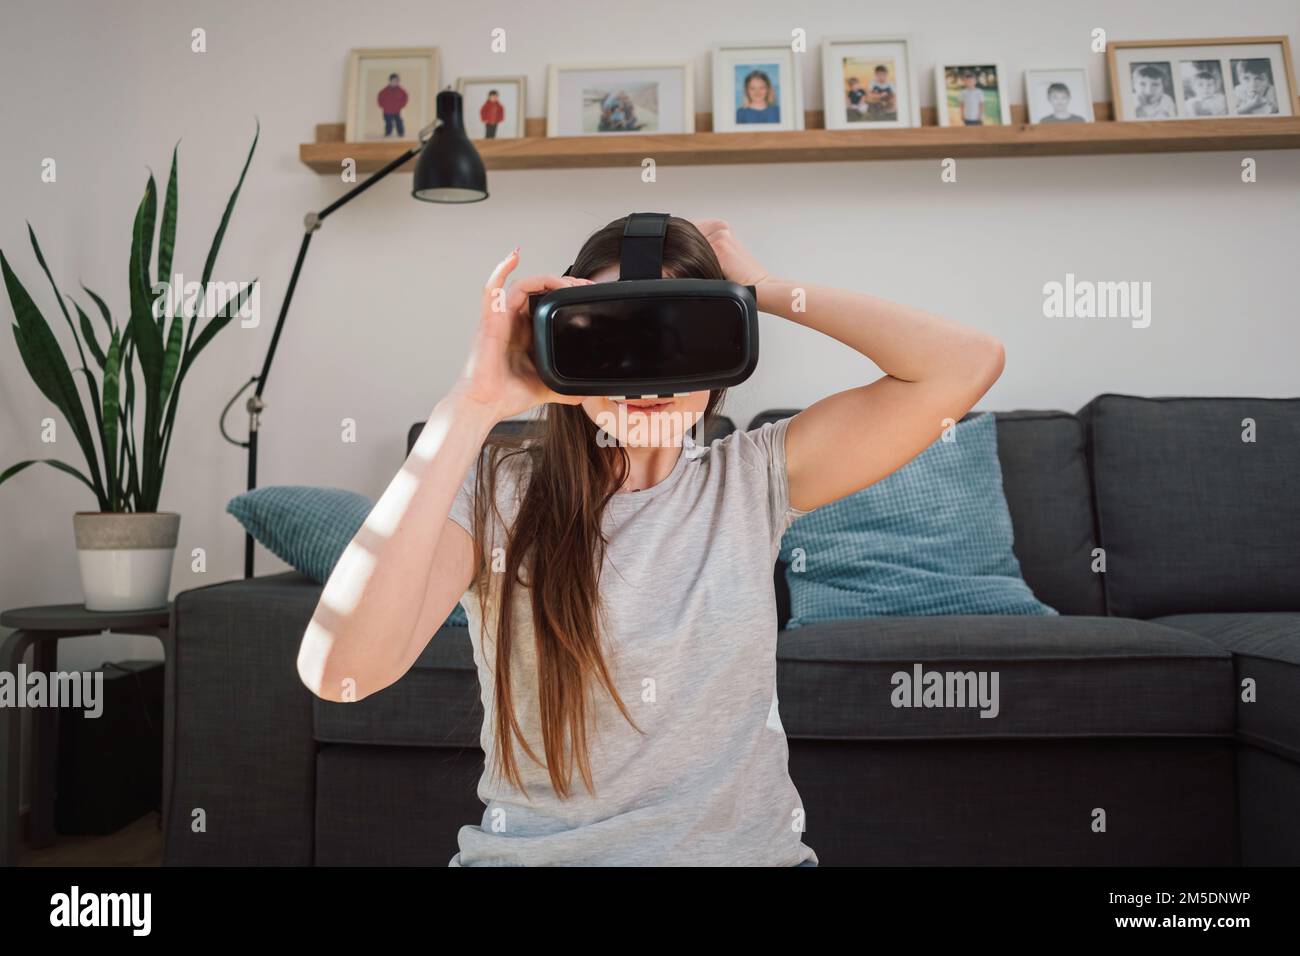 Eine junge Frau trägt eine Virtual-Reality-Brille, erkundet die erweiterte Welt, interagiert mit der digitalen Schnittstelle, während sie im Wohnzimmer sitzt Stockfoto